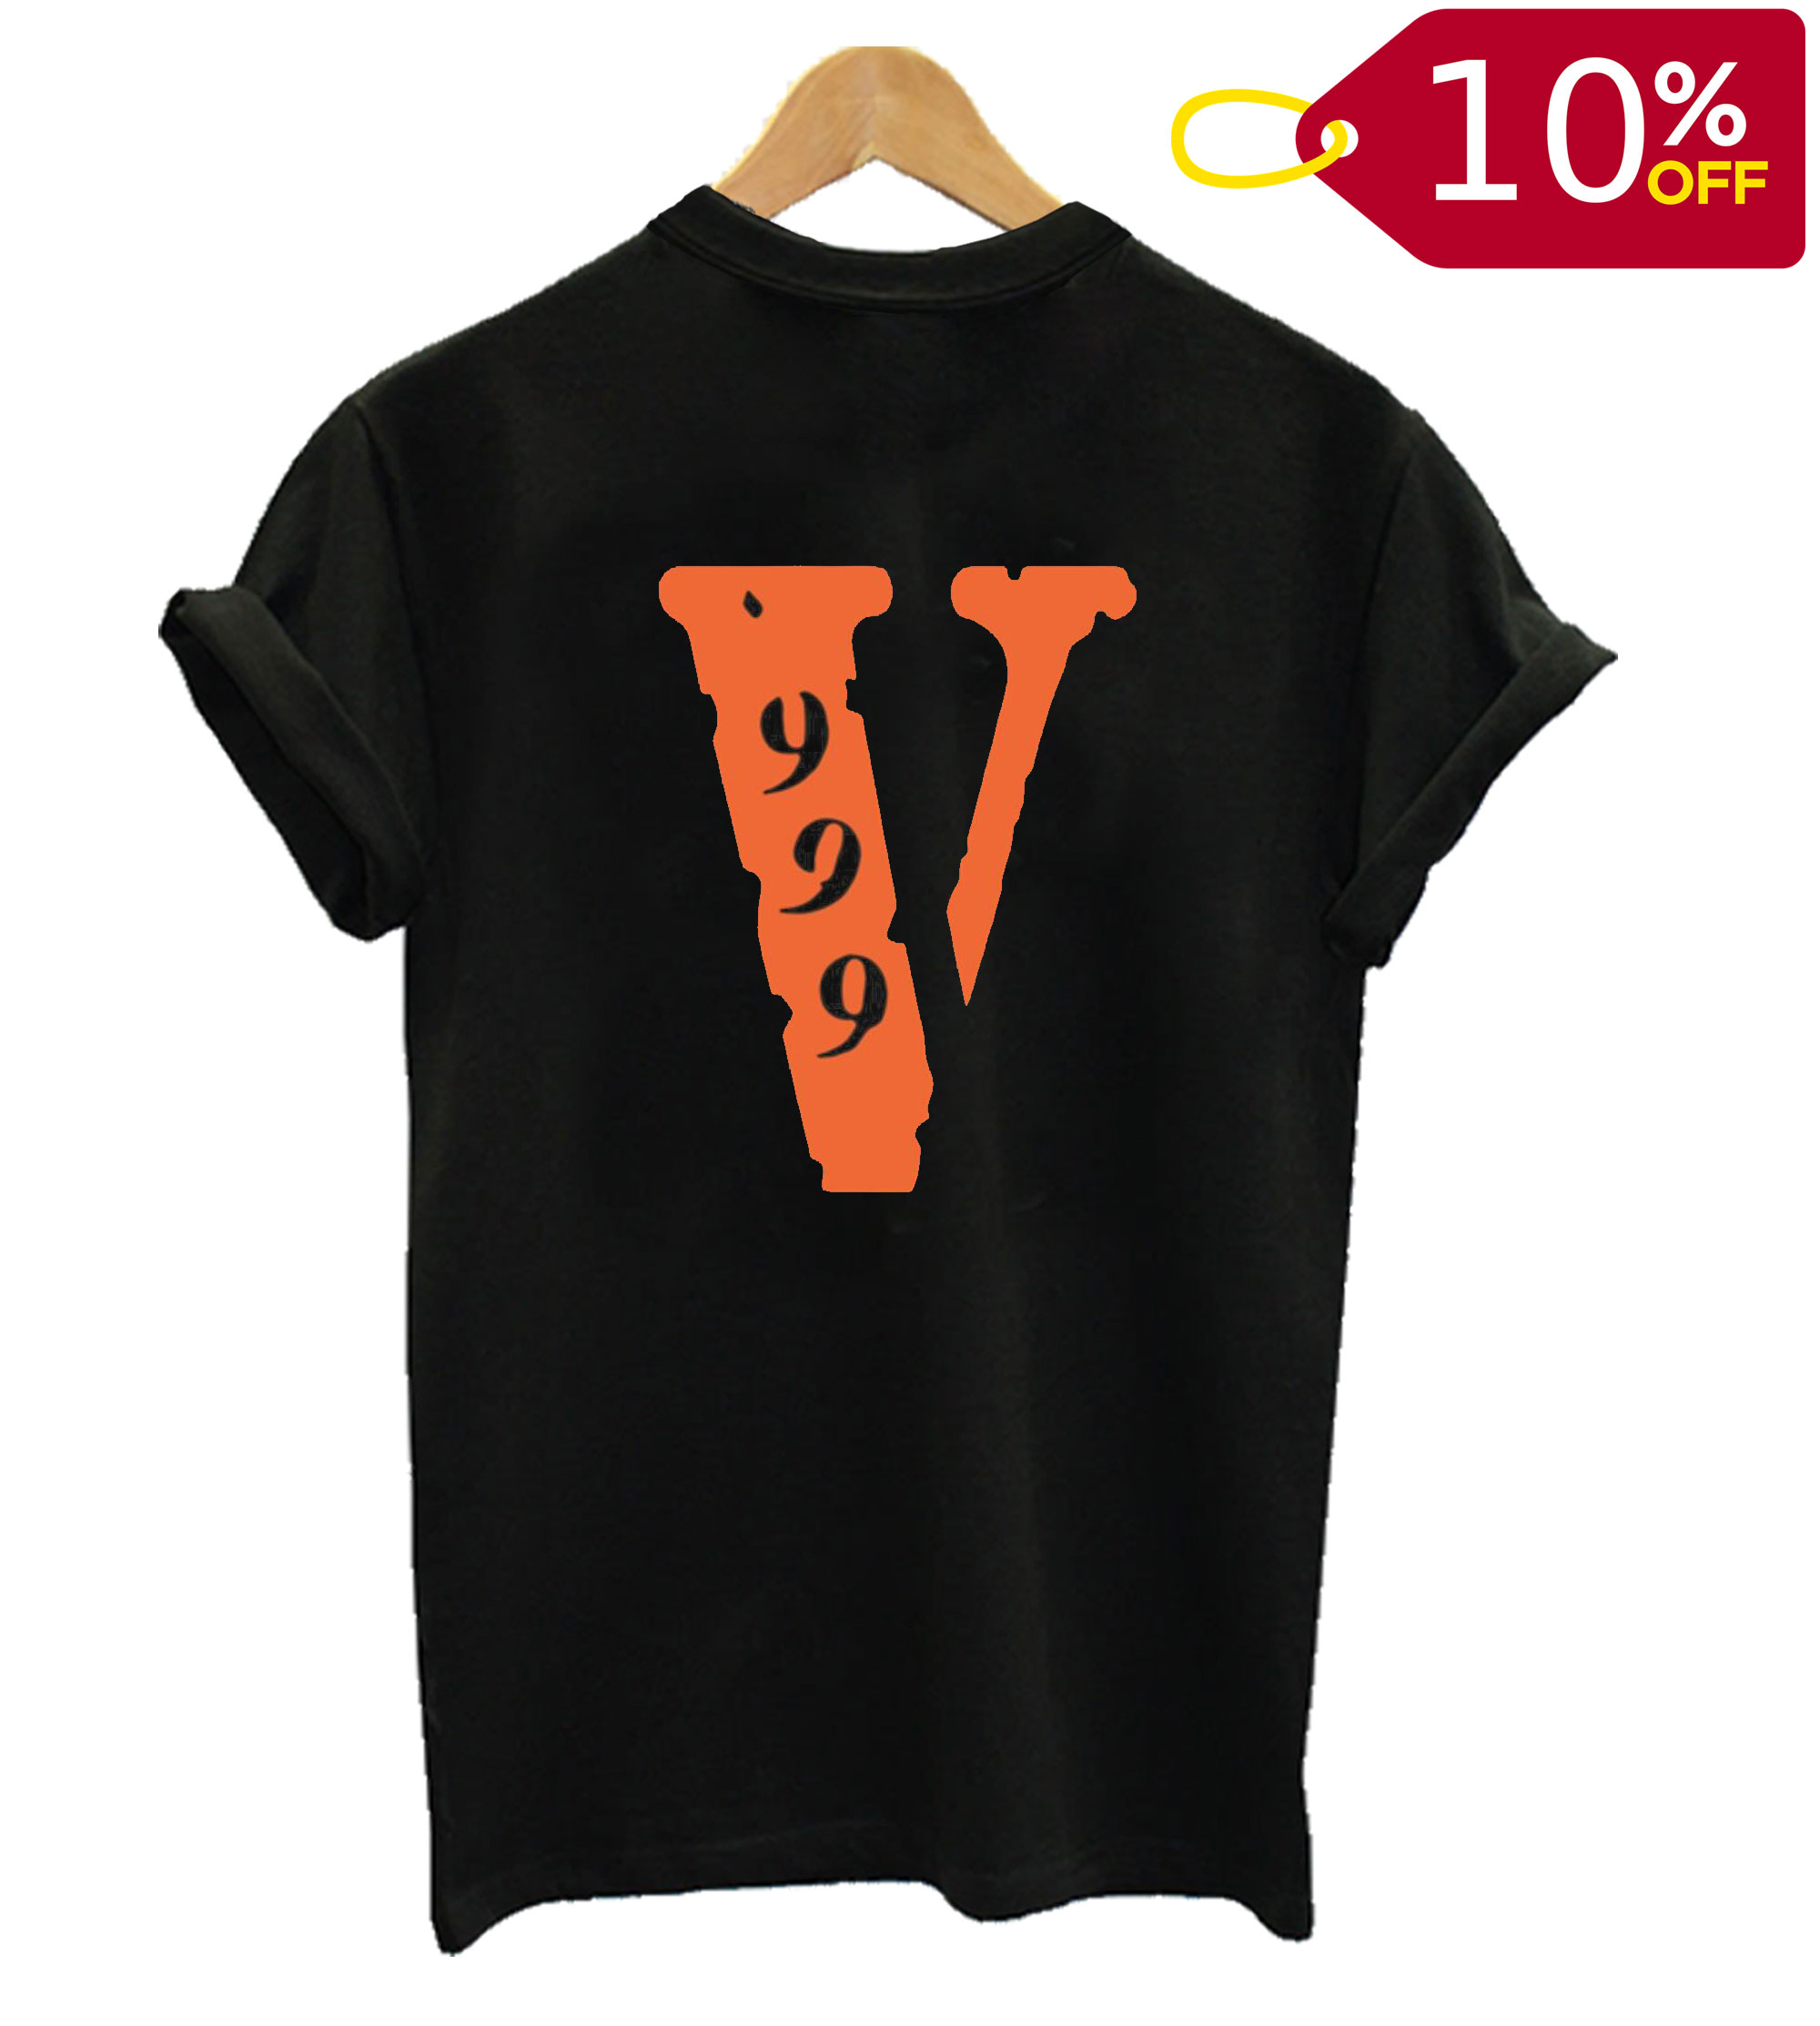 Juice Wrld x Vlone 999 BACK T shirt